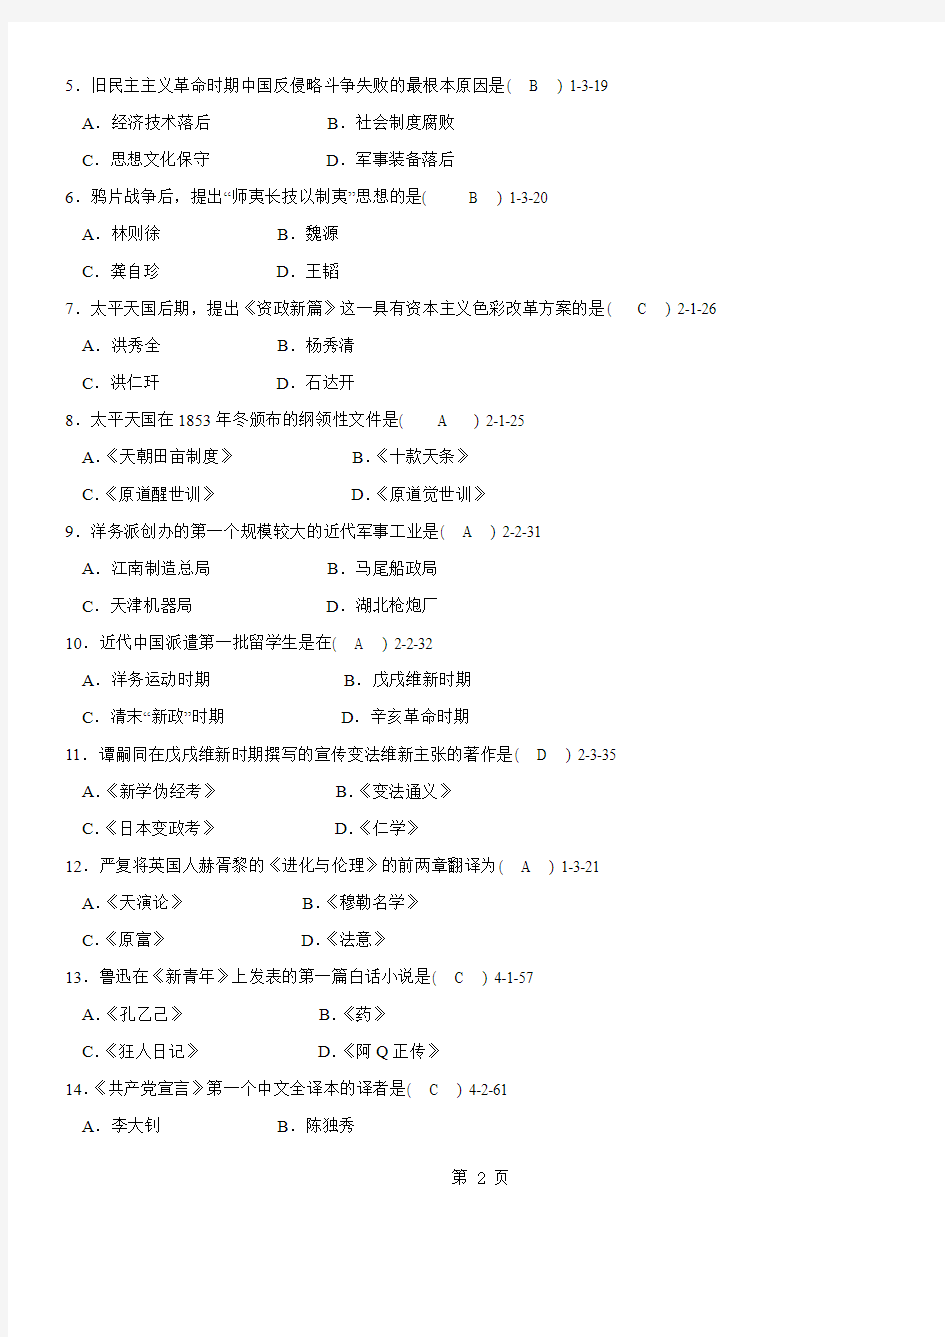 答案版2009年01月自学考试03708《中国近现代史纲要》历年真题及答案